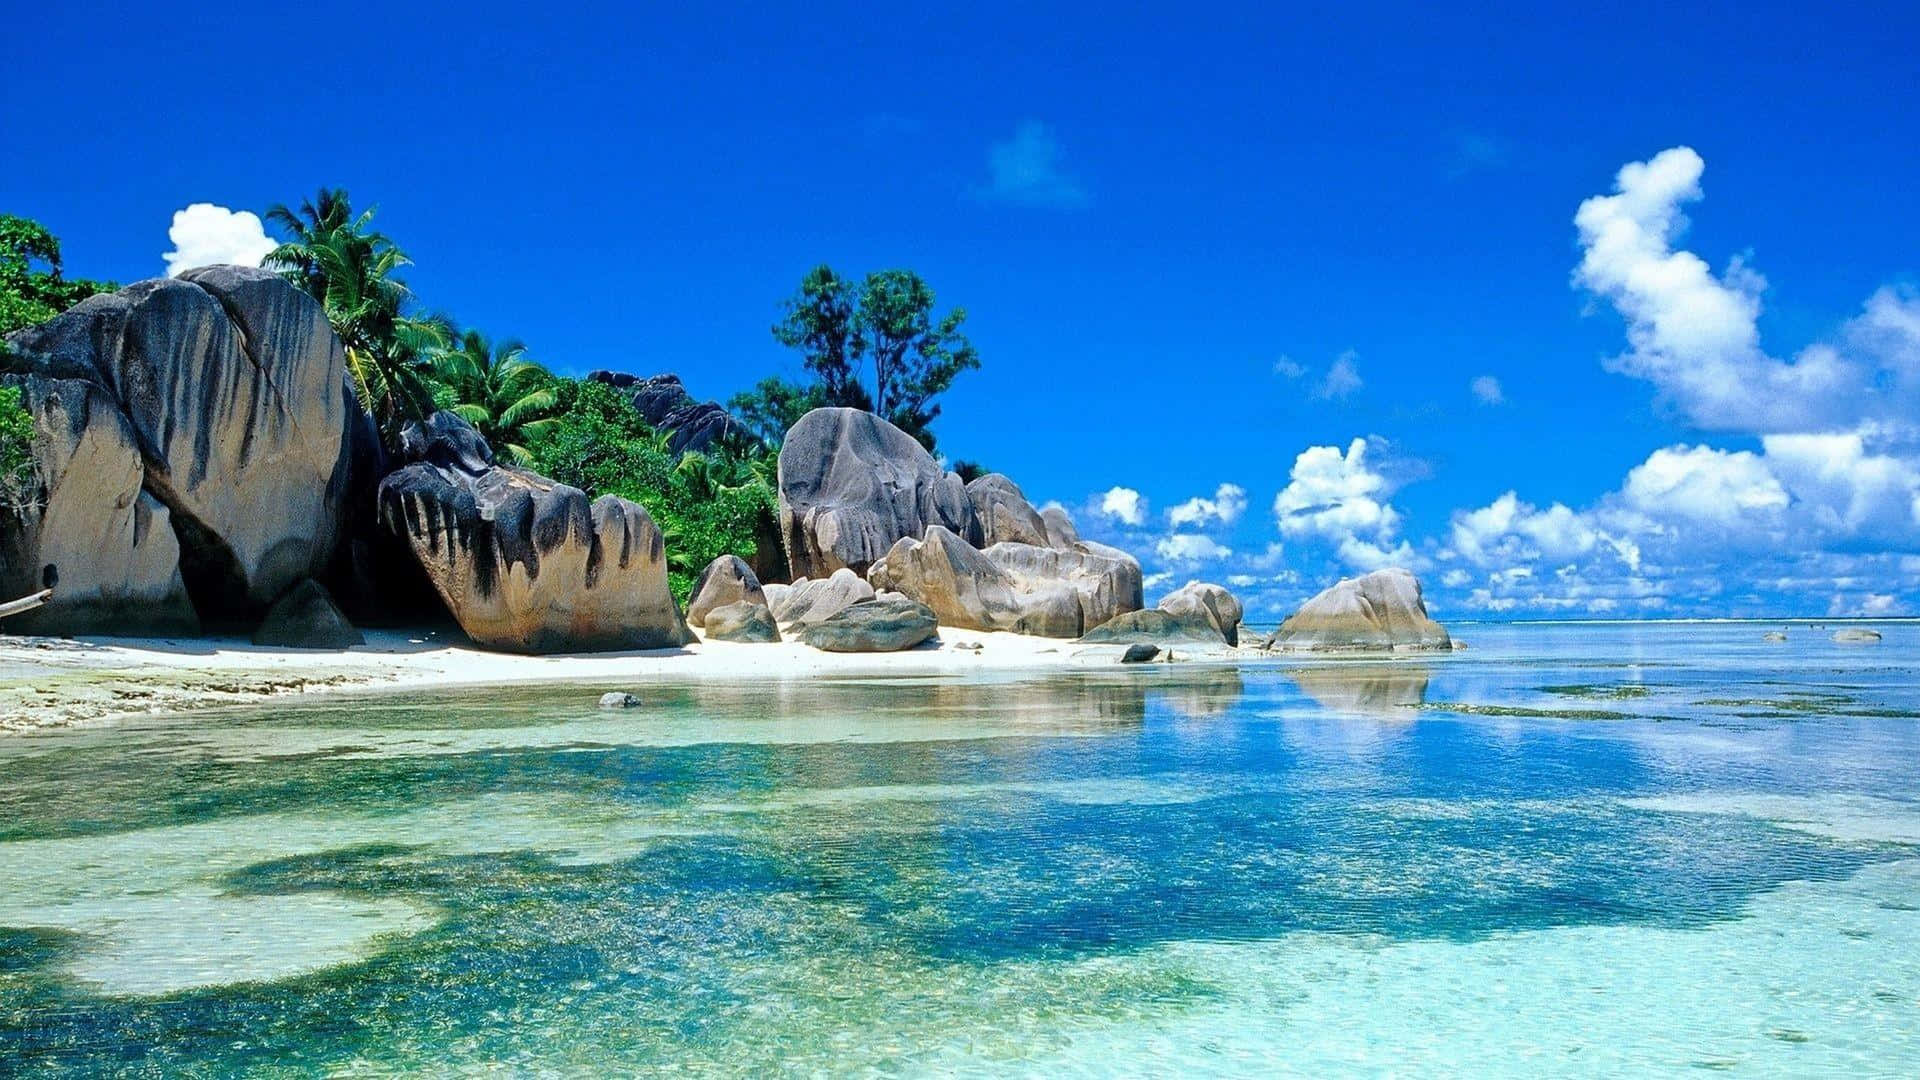 720pbakgrundsbild Av Seychellernas Strand Och Ö.